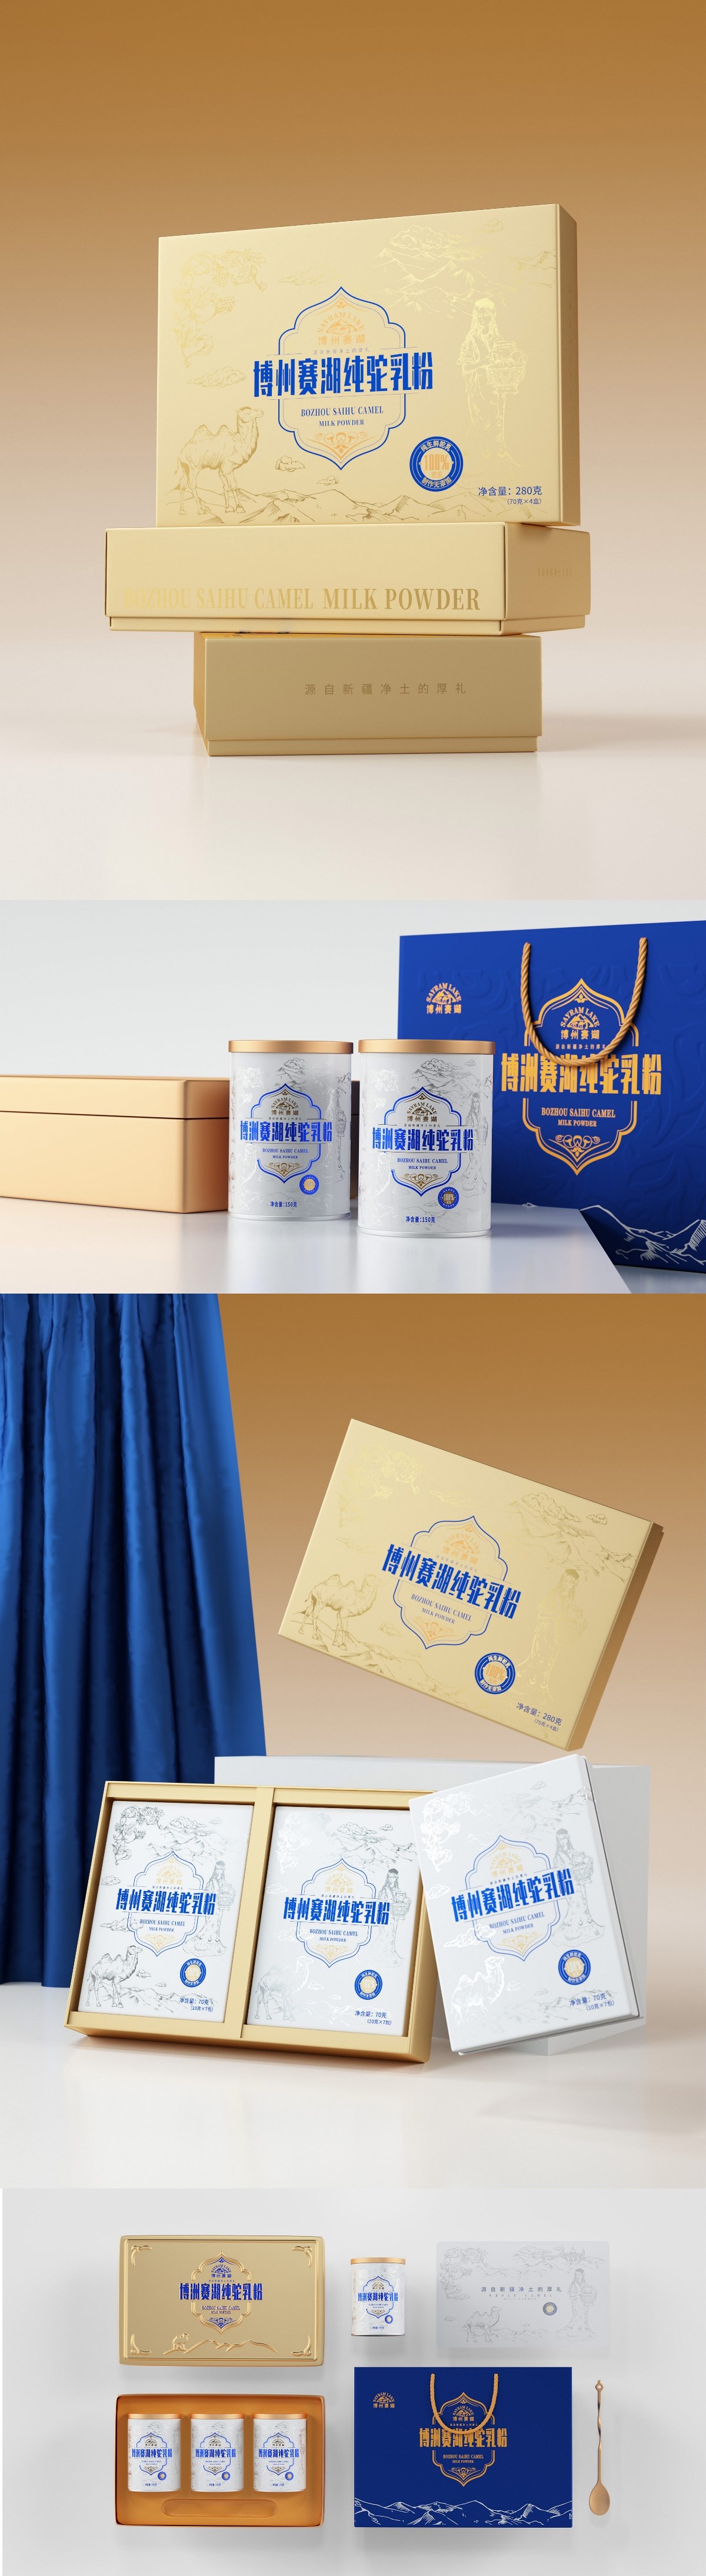 新疆“博洲赛湖”纯驼乳粉包装设计奶粉-礼盒包装设计